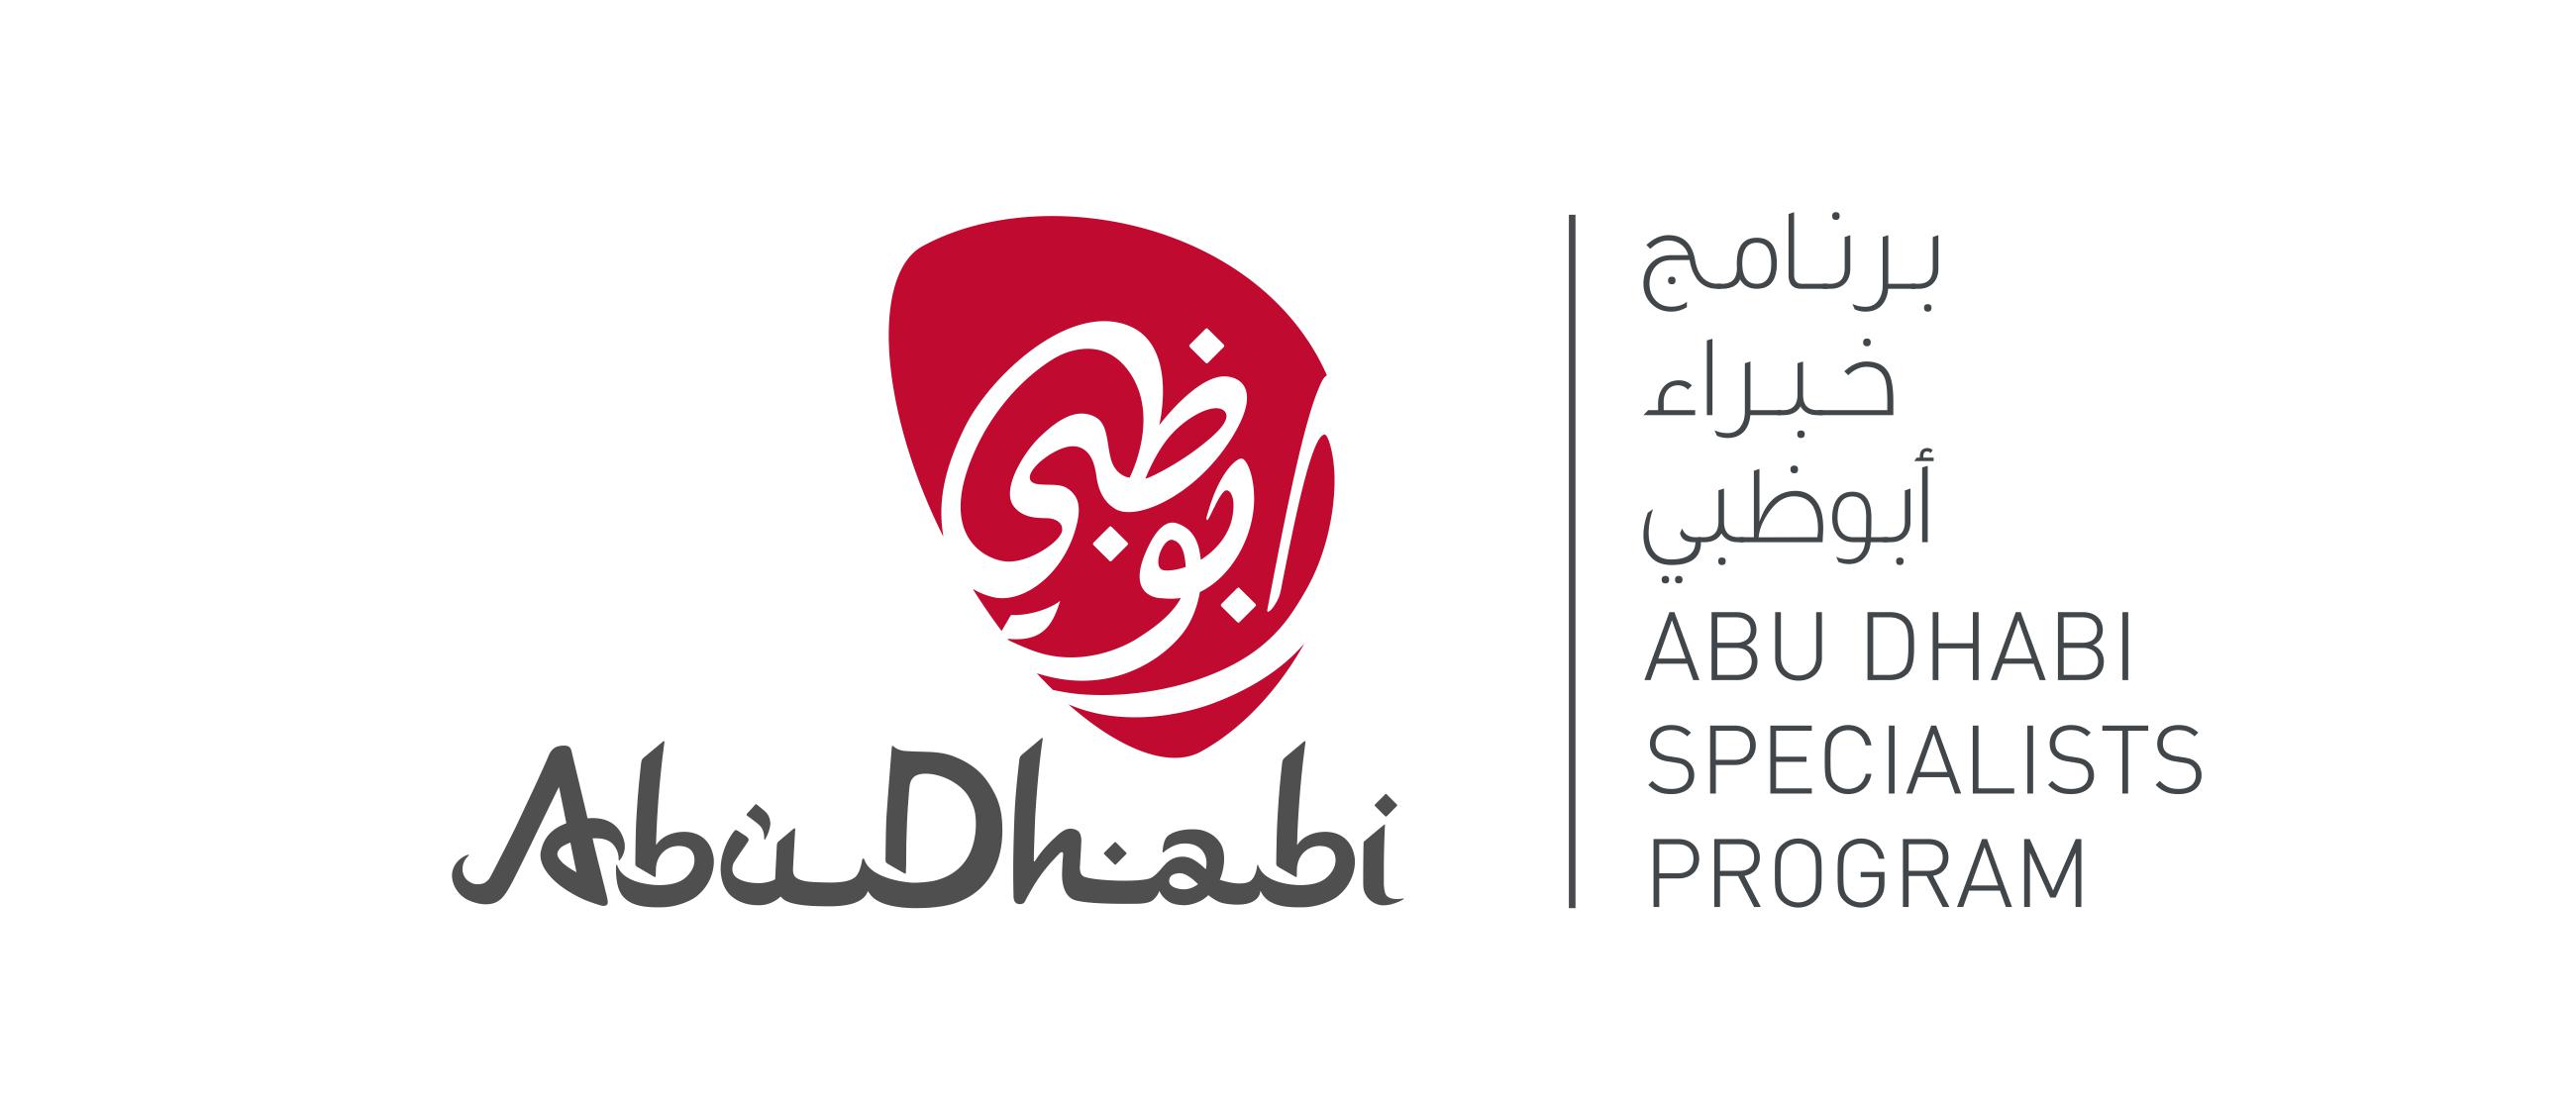 دائرة الثقافة والسياحة – أبوظبي تطلق نسخة جديدة من برنامج خبراء أبوظبي مخصصة لدول الخليج